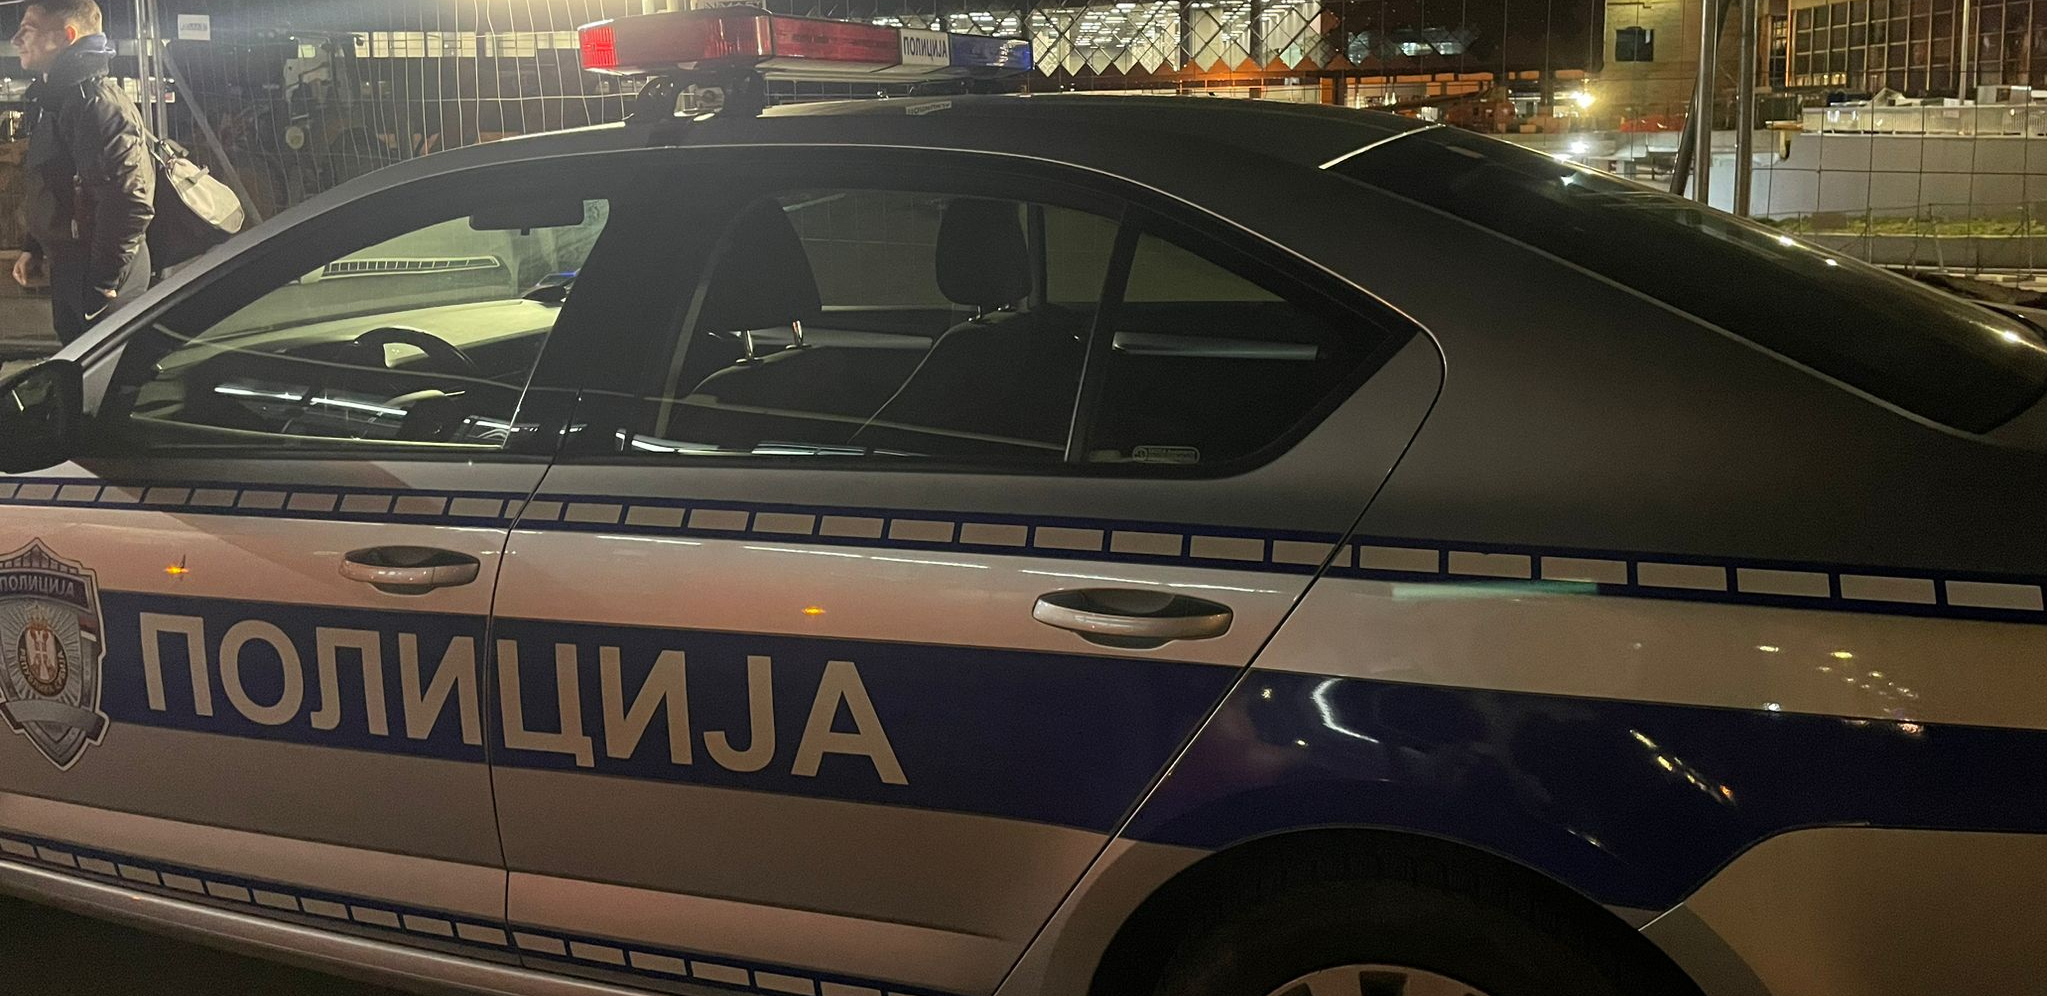 KAMIKAZA IZ MLADENOVCA Pijan se "golfom" zakucao u policijsko vozilo, povredio dvojicu policajaca!